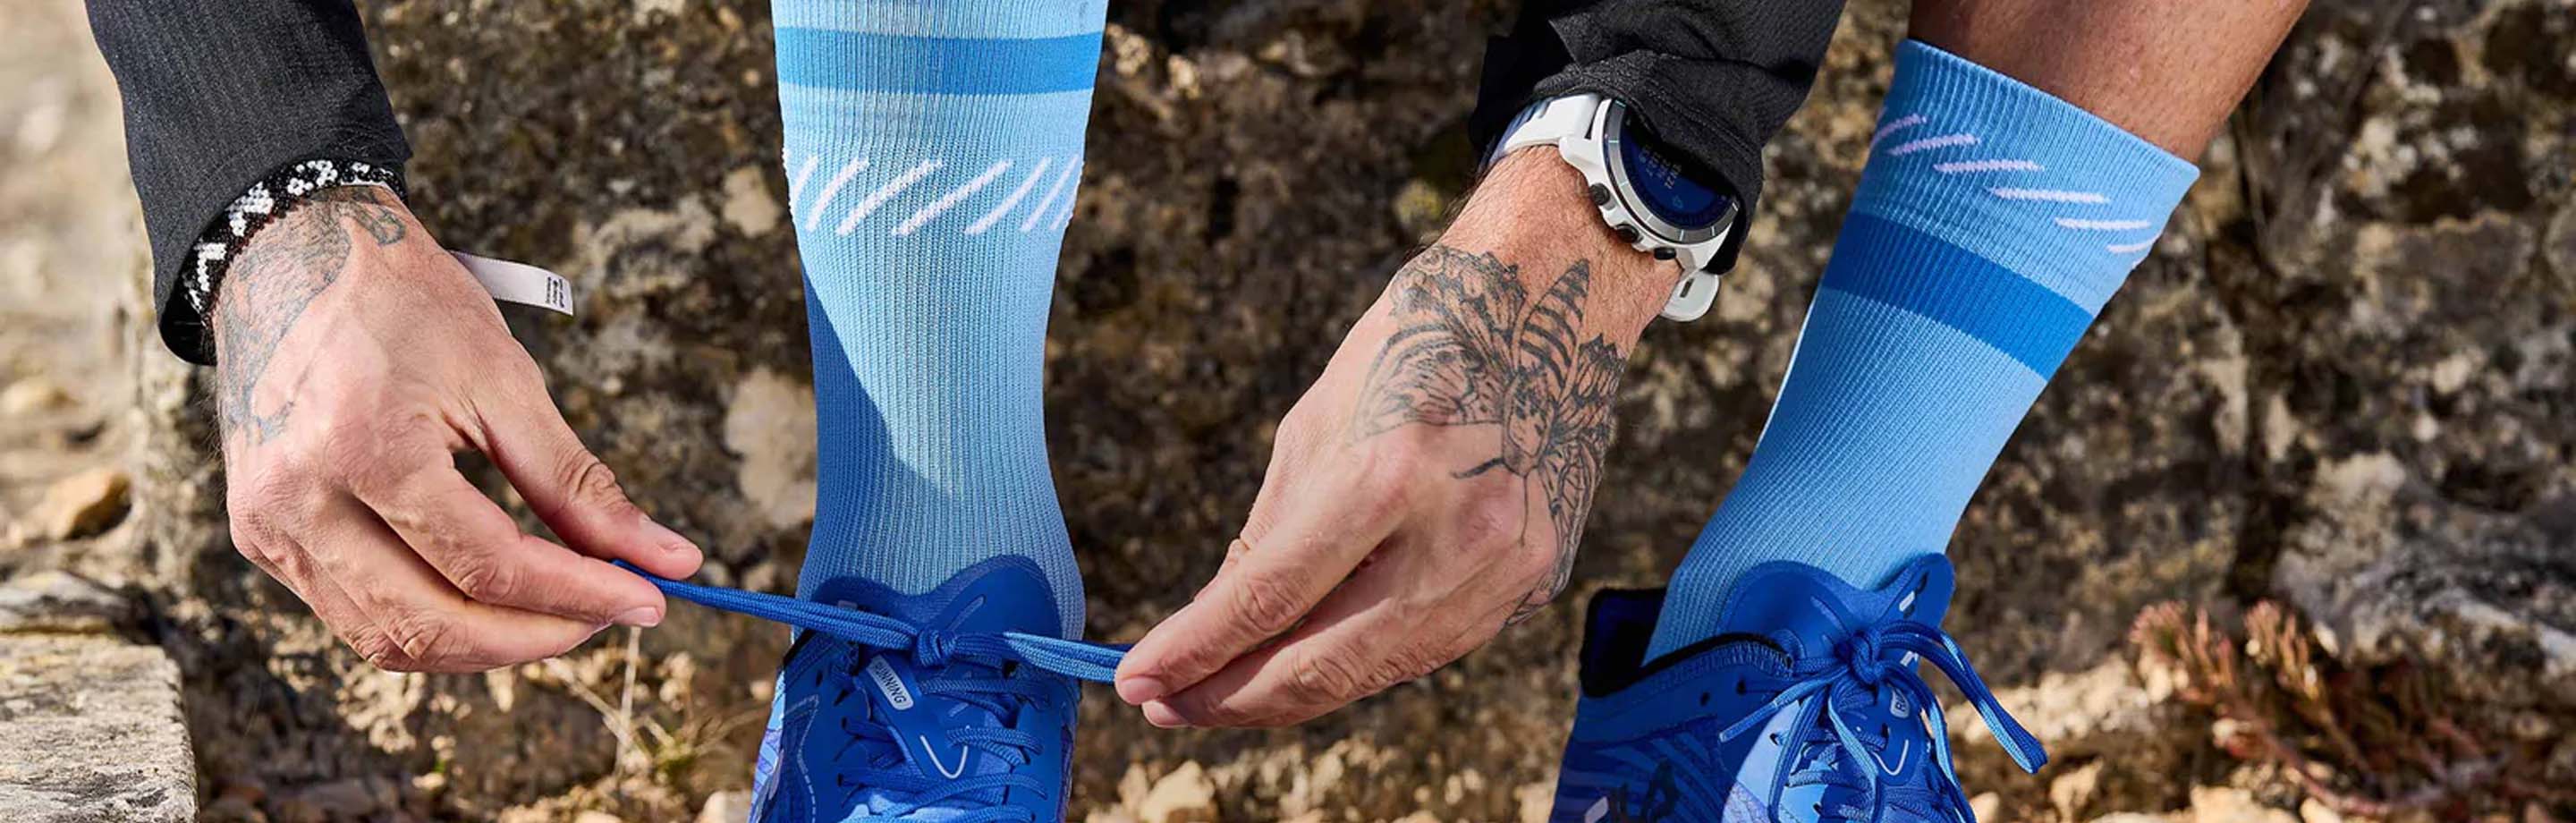 INCYLENCE Socken für Running, Cycling & Triathlon mit besonderem Design